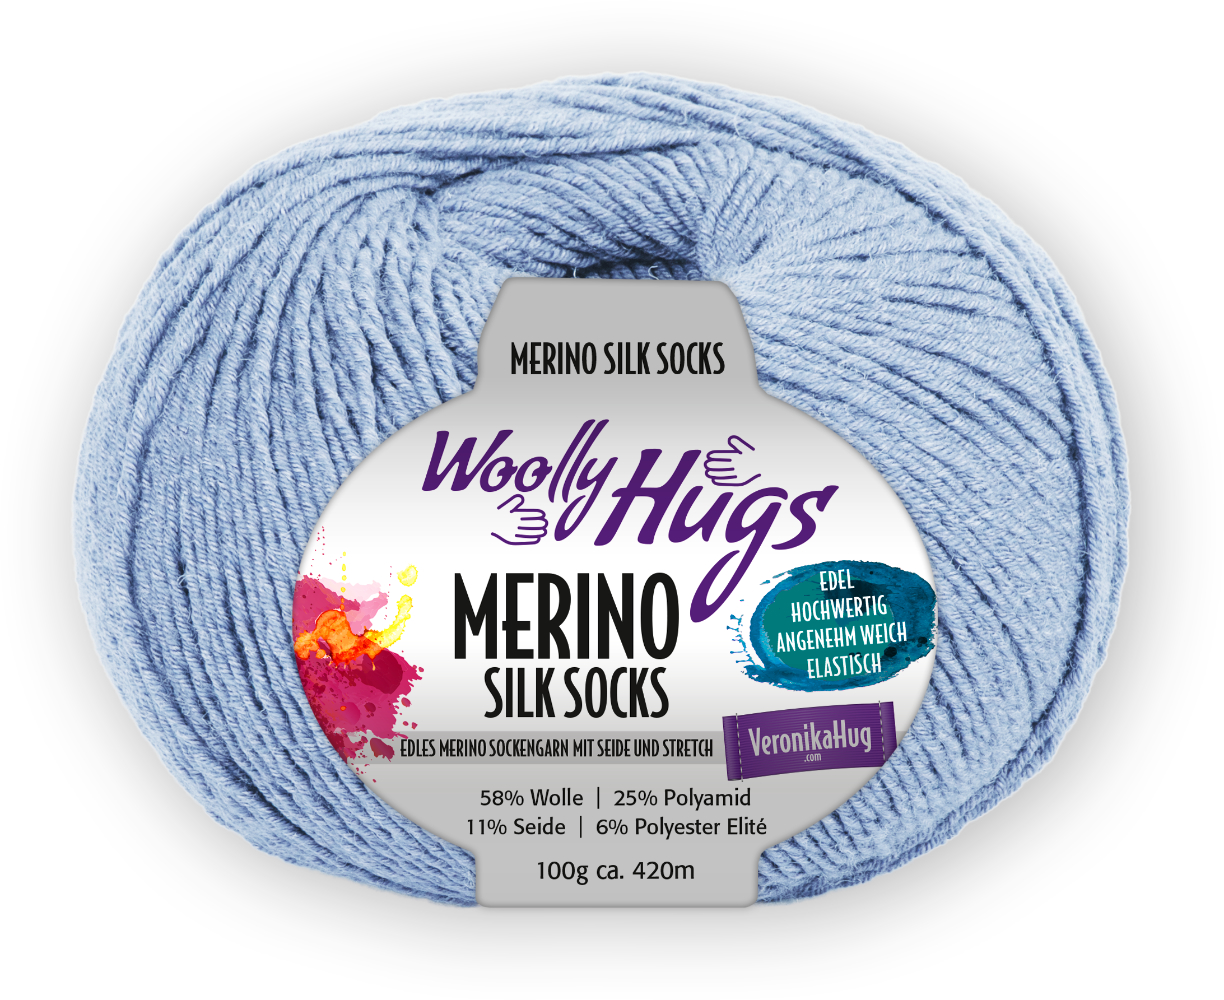 Merino Silk Socks Stretch, 4-fach von Woolly Hugs 0257 - hellblau